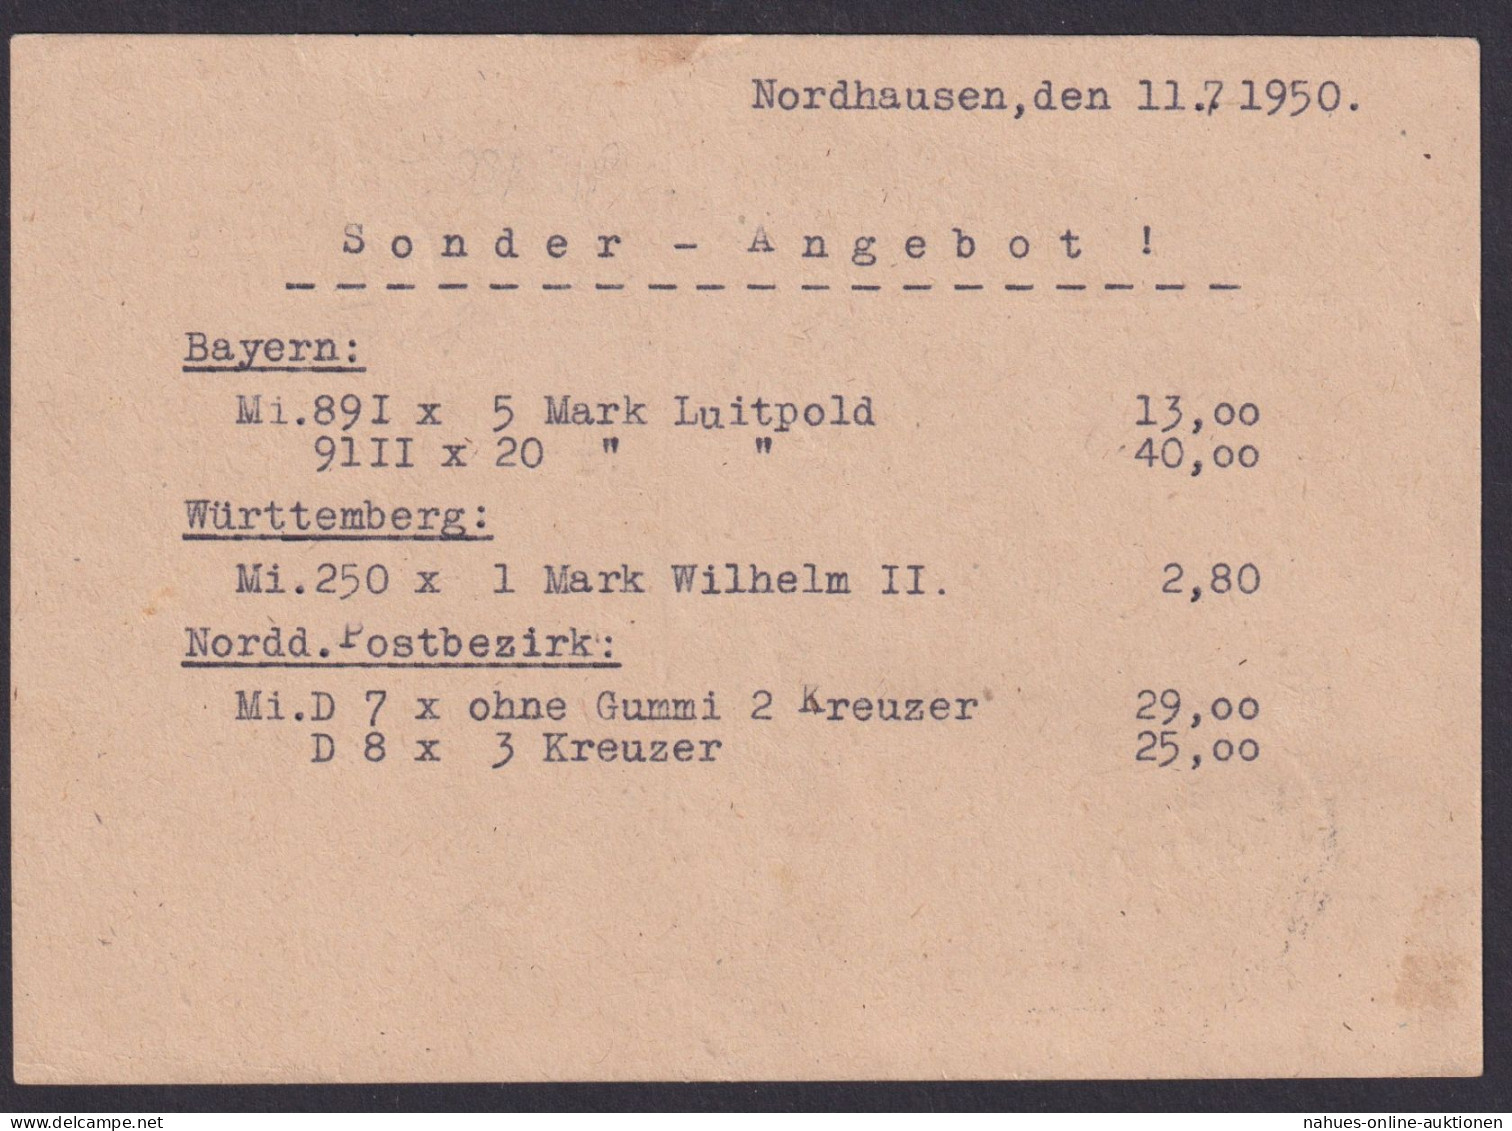 DDR MEF 262 Akademie Postkarte Reklame Rudolf Thumann Nordhausen Kat. 85,00 - Brieven En Documenten